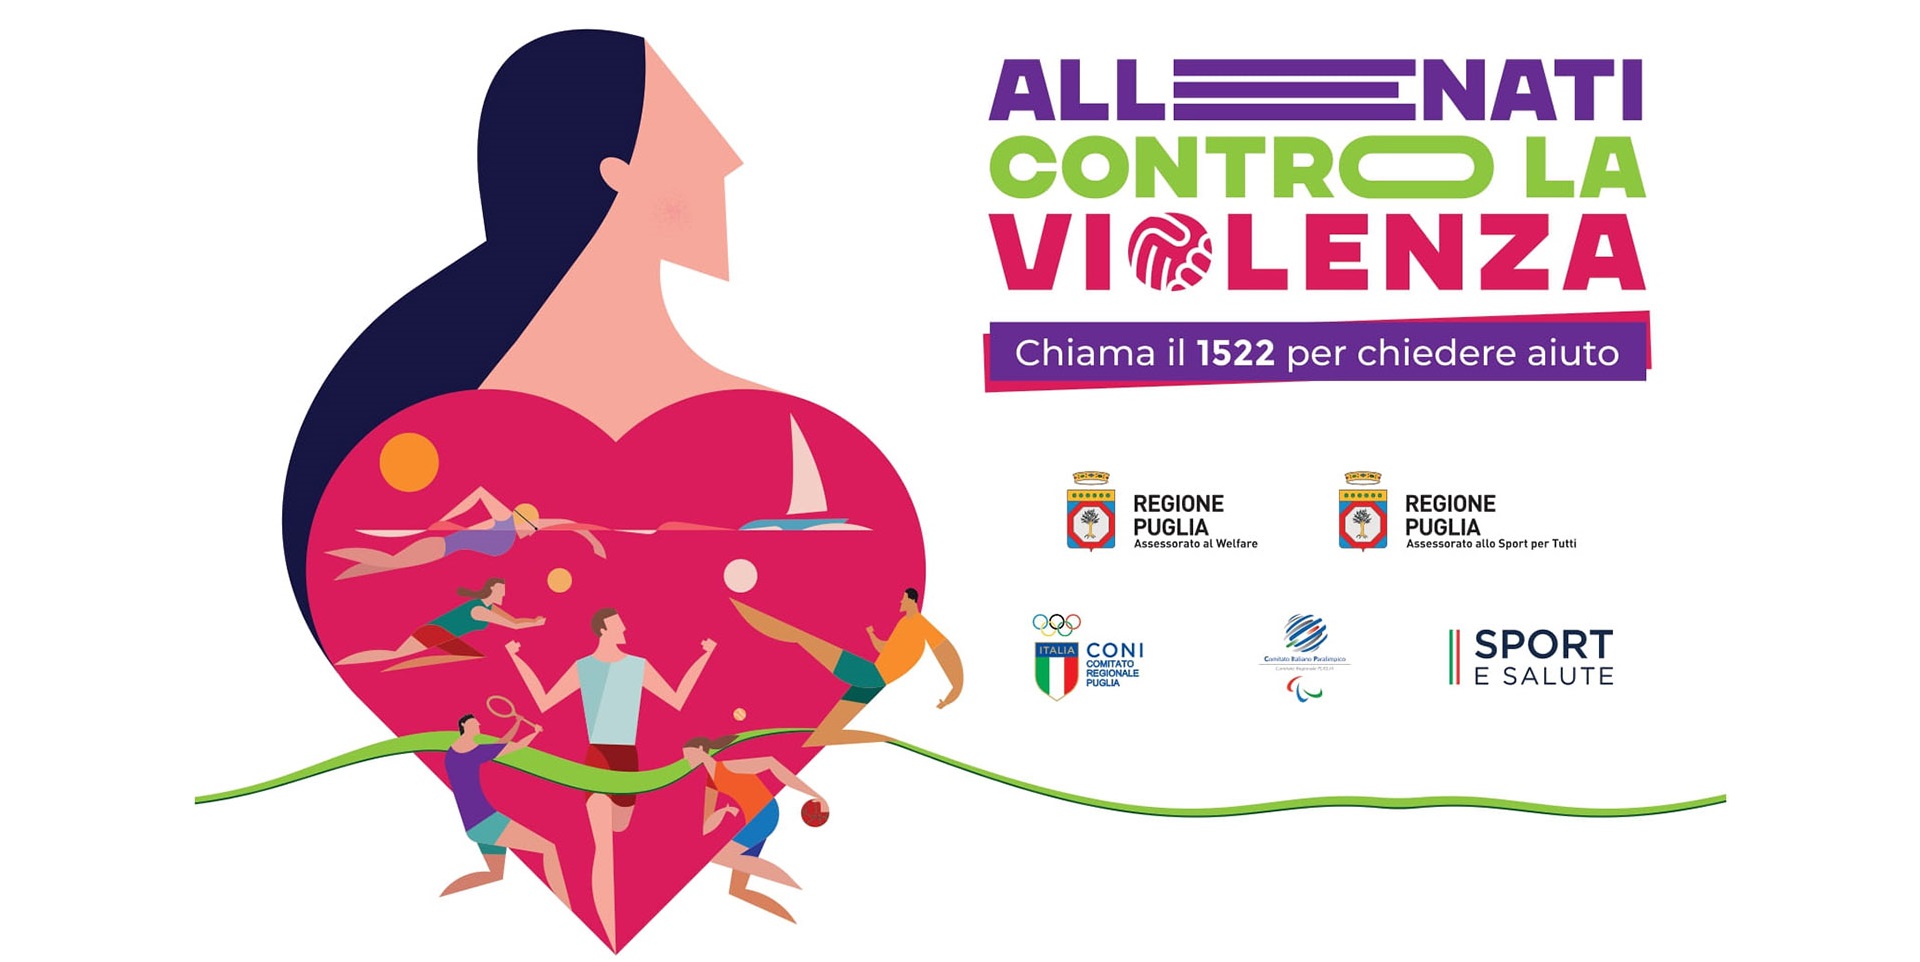 La Coppa dei Campioni ospita la campagna “Allénati contro la violenza”: verso la sensibilizzazione al rispetto e all’inclusione